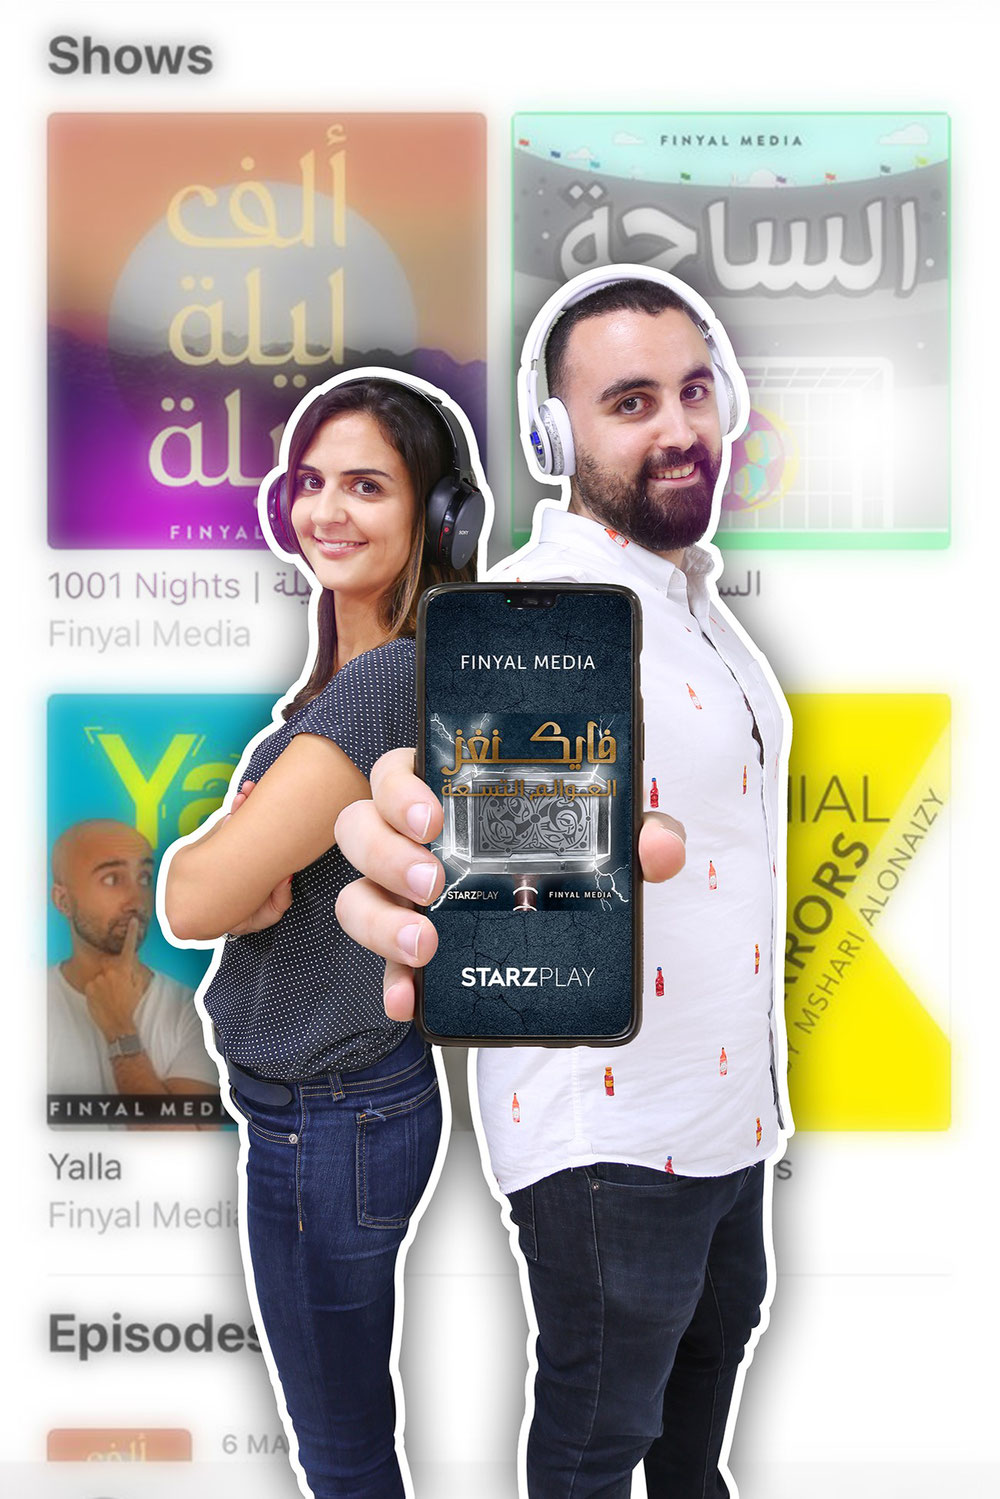 الشراكة تهدف إلى إنتاج سلسلة مدونات صوتية (بودكاست) عربية من 12 حلقة بعنوان "ذا نيو ريلمز" حول المسلسل الدرامي الشهير فايكنغز